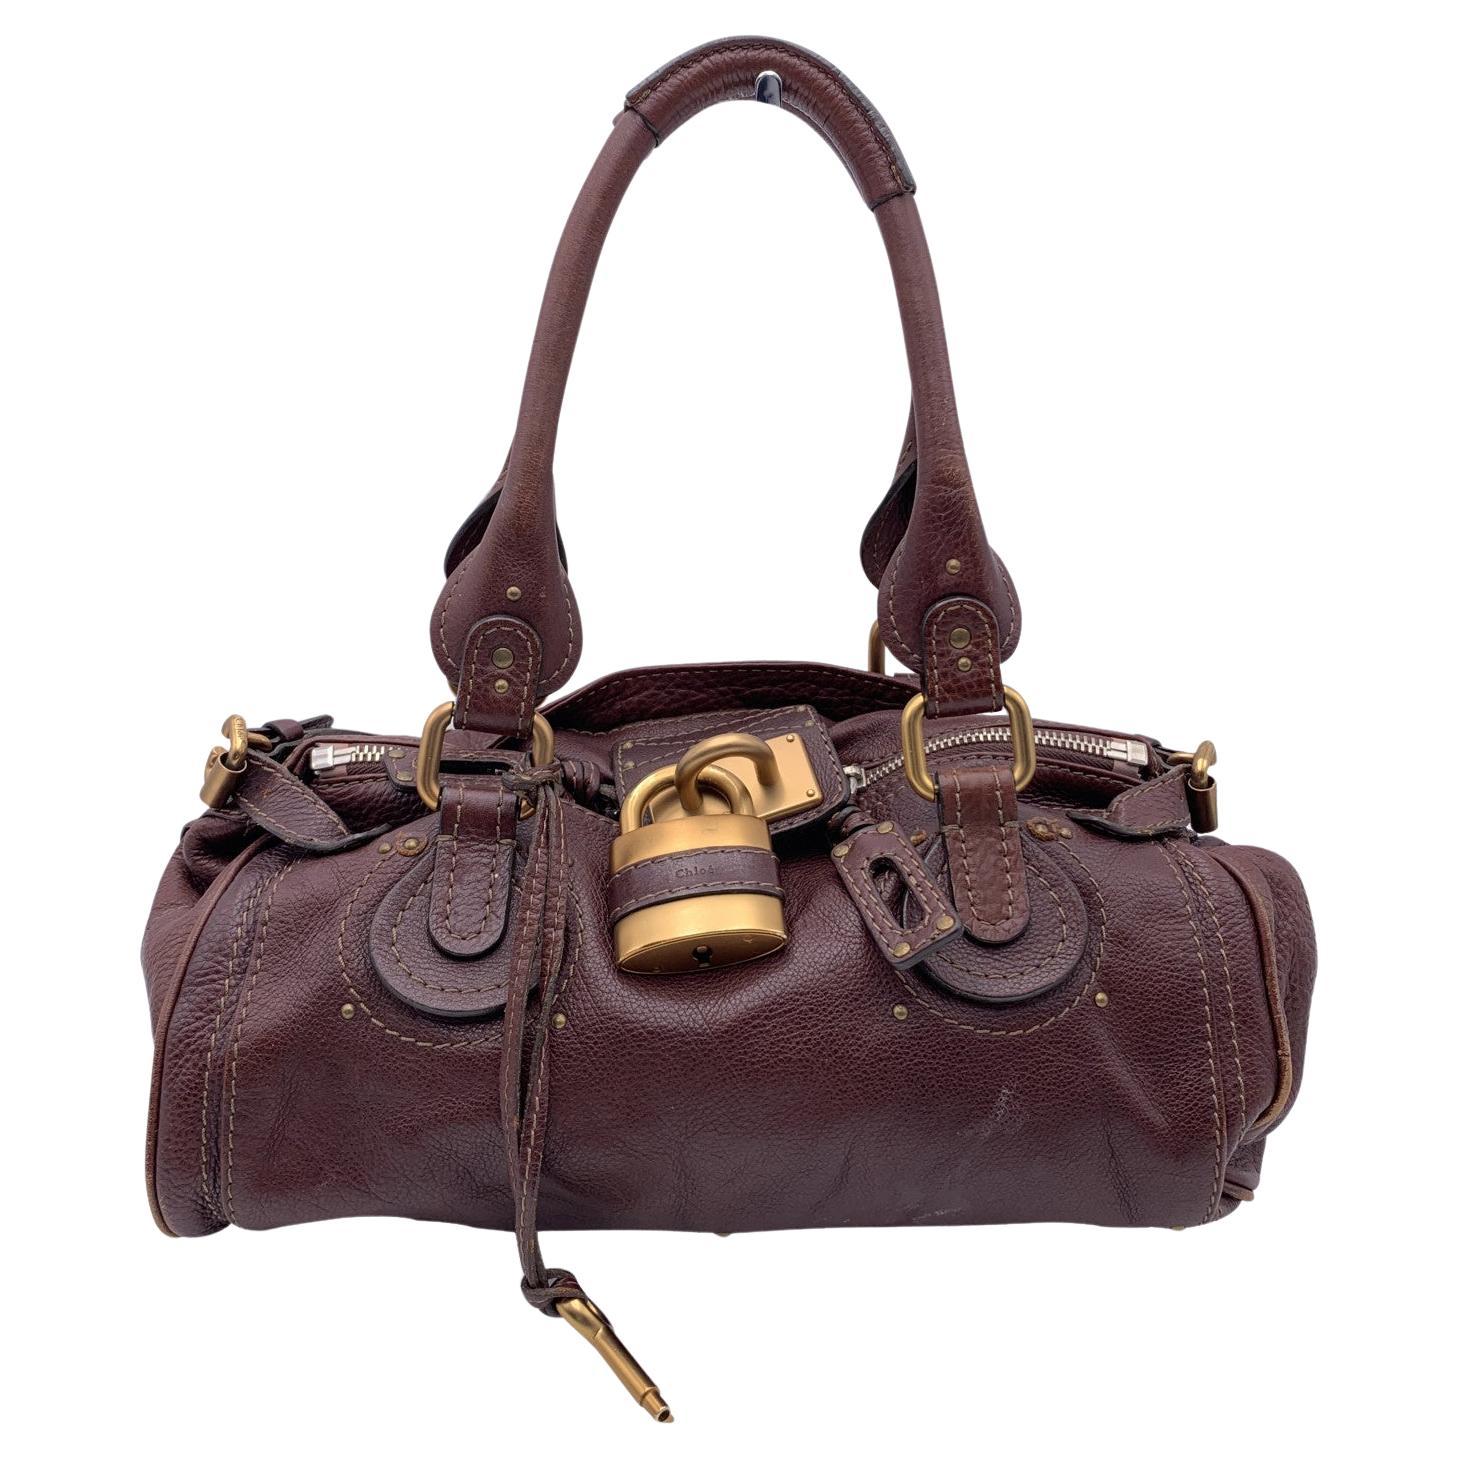 Chloe Brown Leather Paddington Bag Tote Satchel Handbag